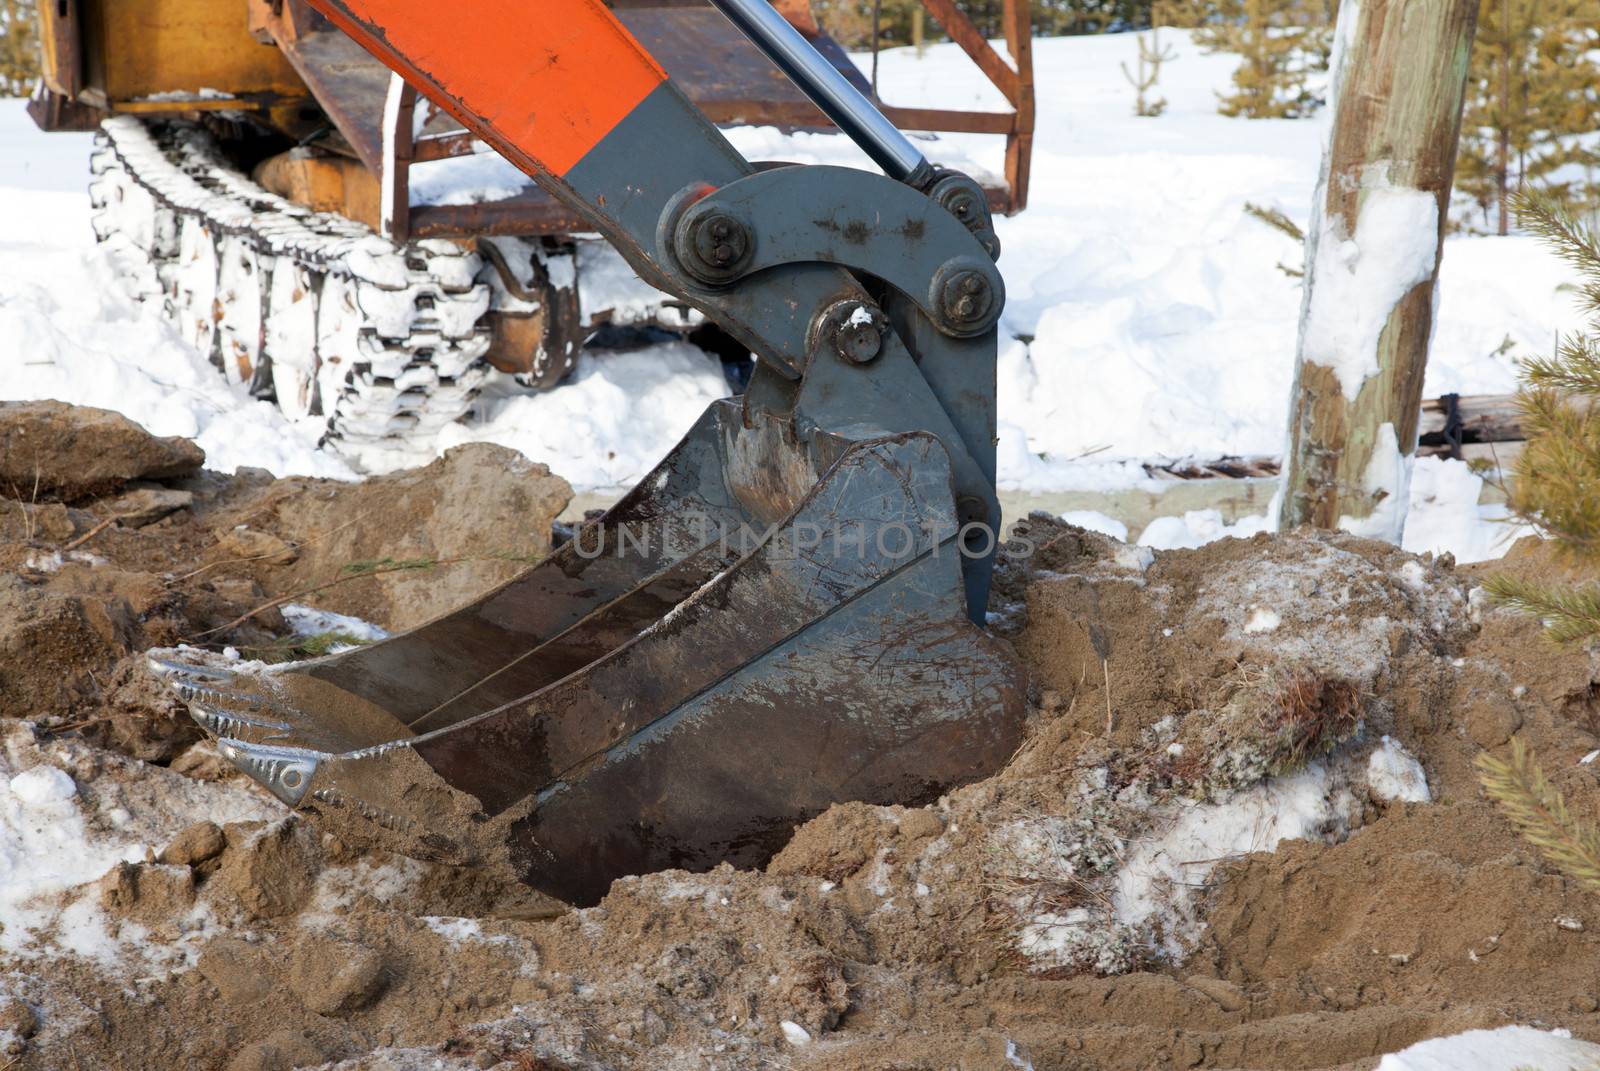 Bucket hydraulic excavator  by AleksandrN